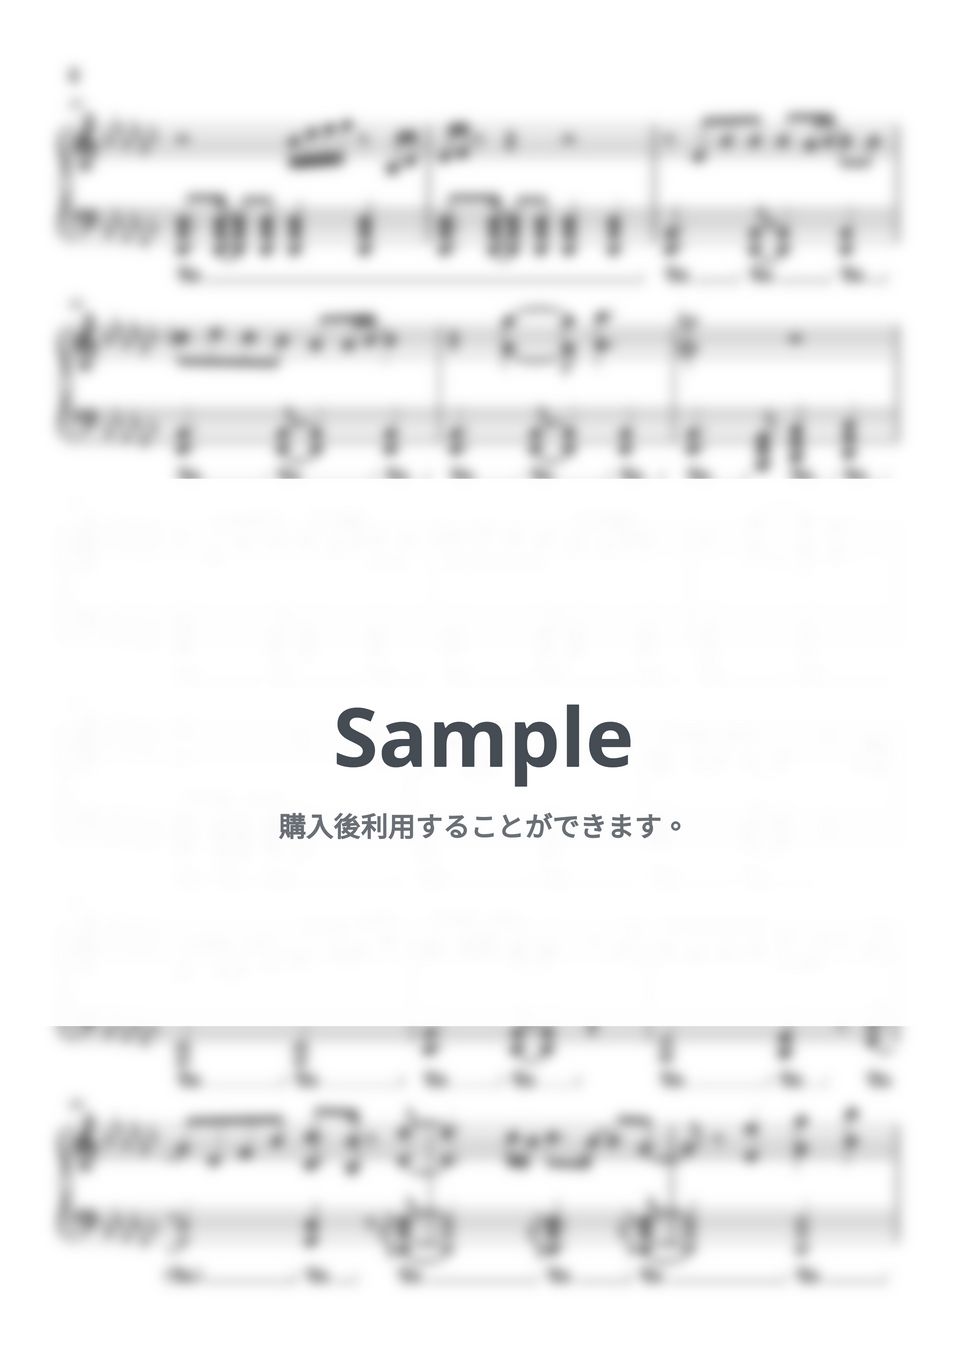 水樹奈々 - Synchrogazer (戦姫絶唱シンフォギア) by Piano Lovers. jp